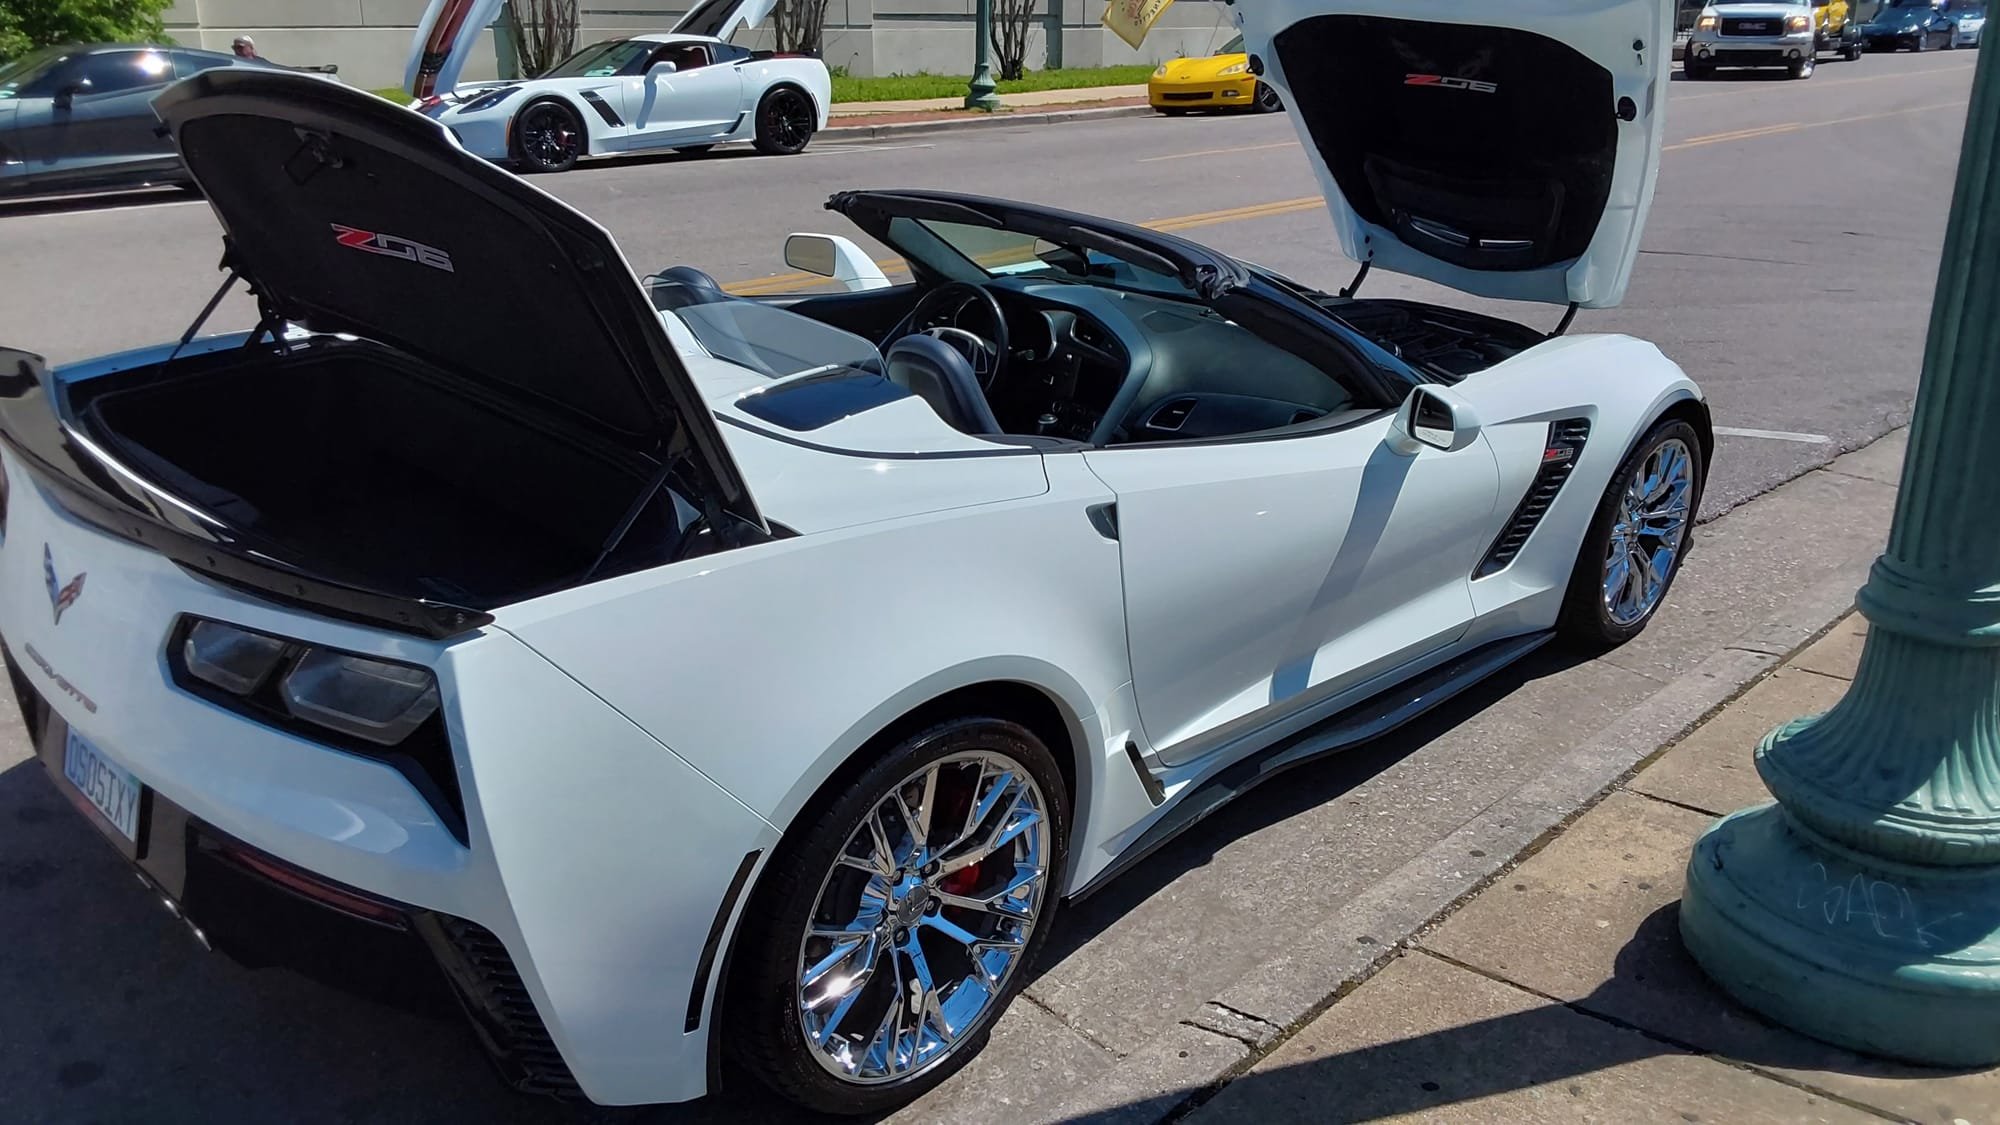 2023 Memphis, TN ICCC Show Your Ride Car Show Pictures Corvette